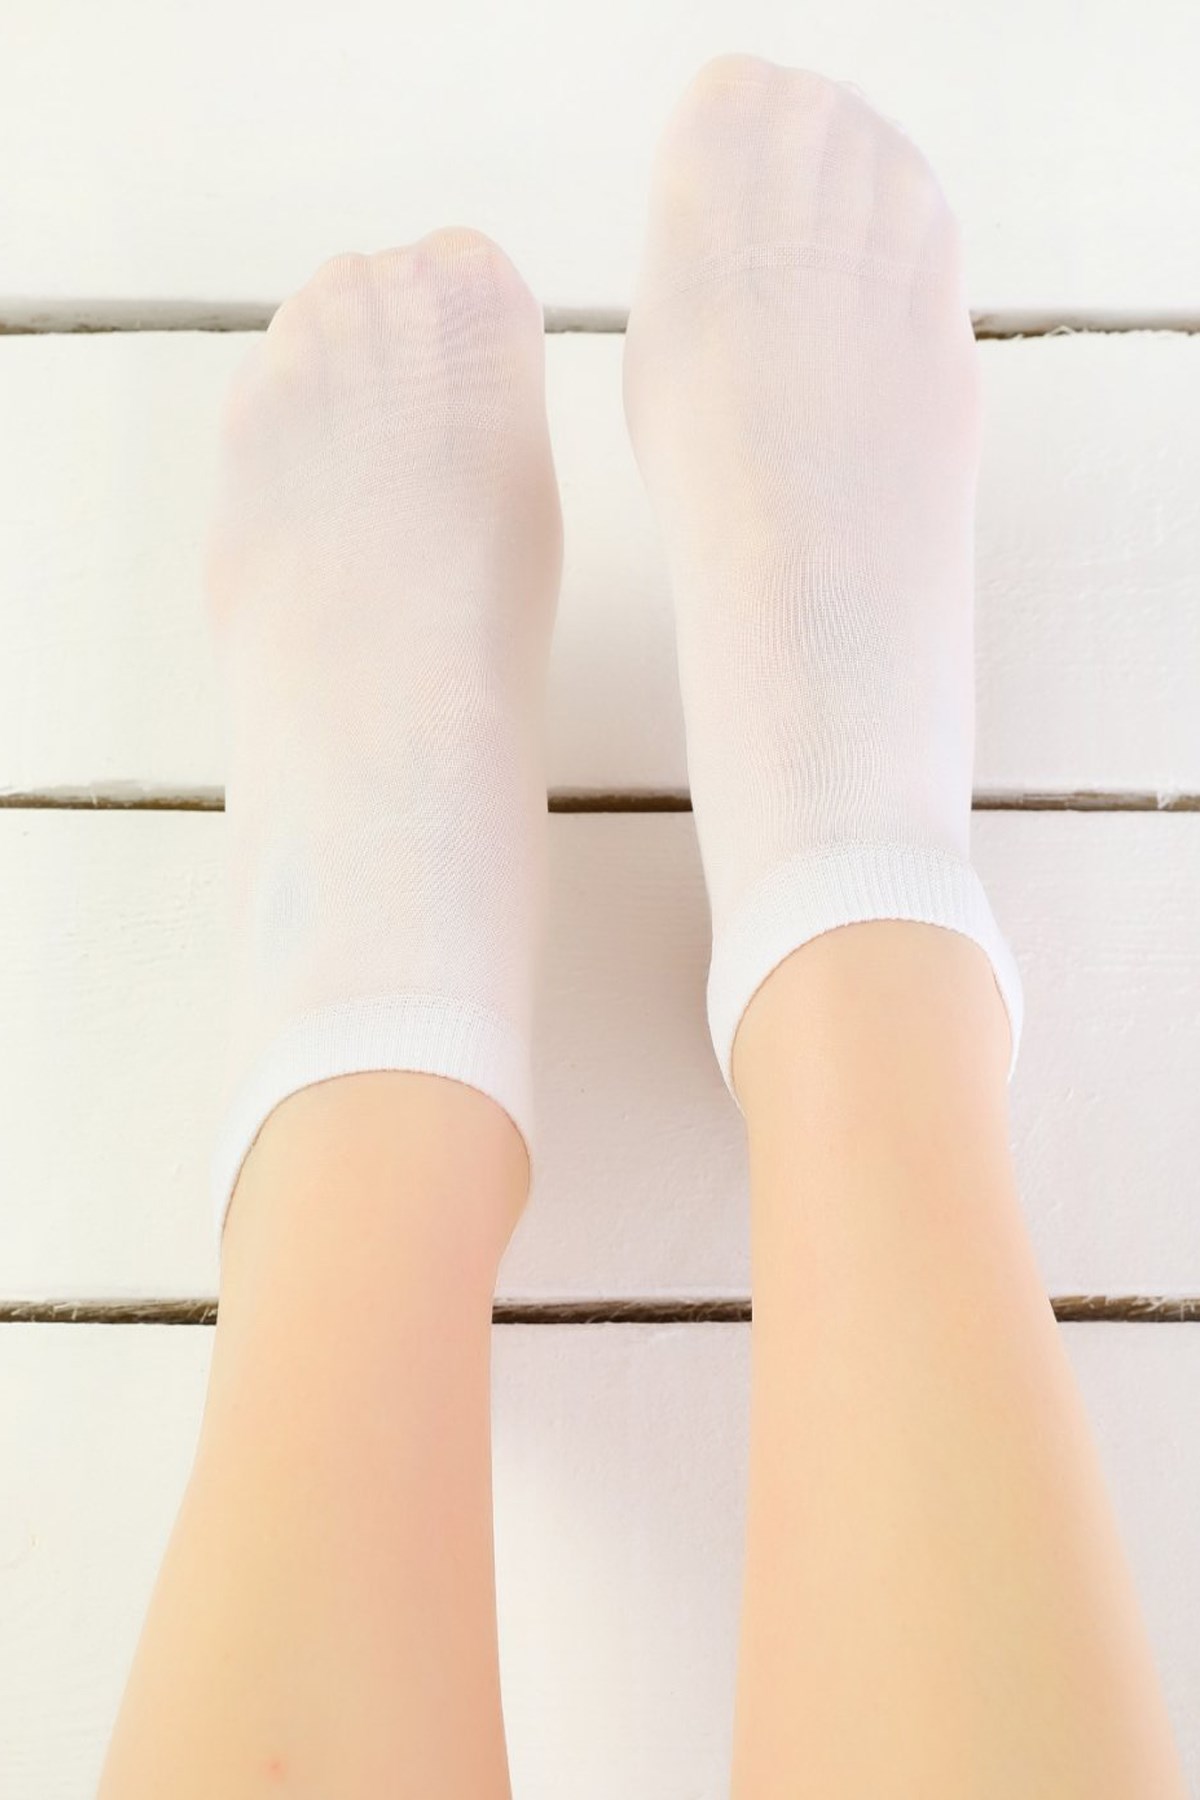 Penti Kadın Dance Burunsuz Soket Çorap Beyaz Yeni Sezon! Moda! Ürünler  Rakipsiz Fiyatlar İç Giyim, Ev Tekstili, Kozmetik, Çeyiz ve Daha Fazlası |  yoncatoptan.com